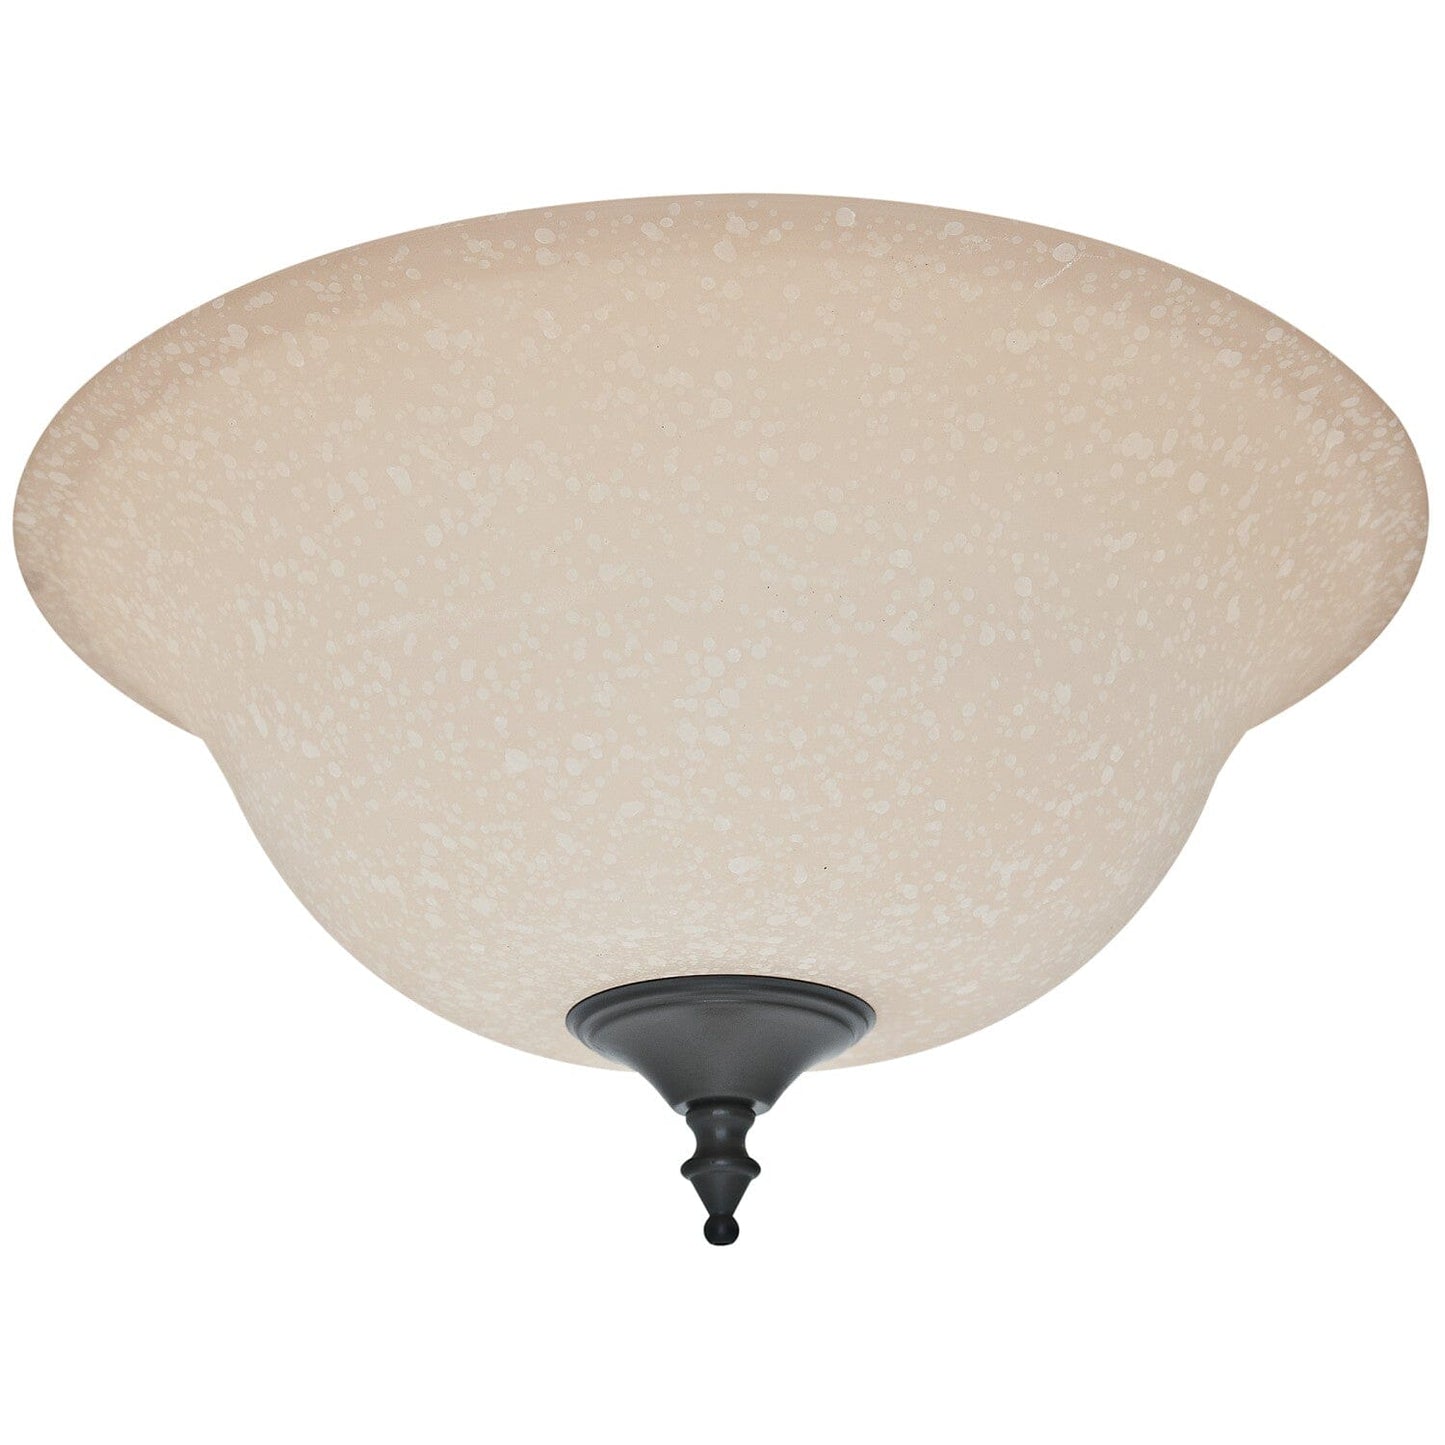 https://www.hunterfan.com/cdn/shop/files/amber-scavo-glass-bowl-99161-ceiling-fan-accessories-hunter-new-bronzenew_ed7b996f-a7d5-4e6e-b146-d9befa3ac9c0.jpg?v=1704276527&width=1445